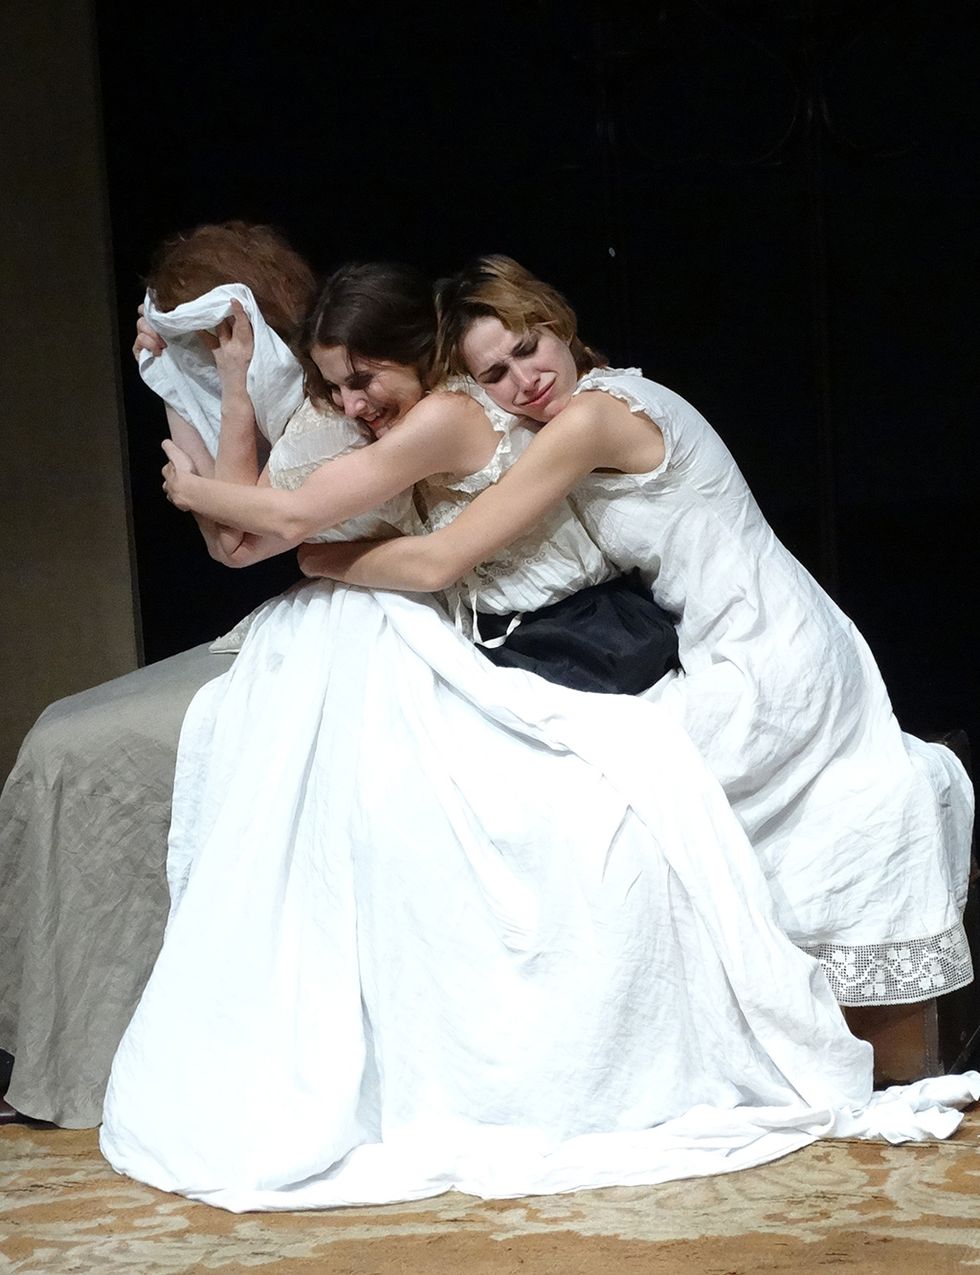 <p>
La emblemática 'Tres hermanas' de Antón Chéjov regresa a las tablas de la mano de Teatro Guindalera. Un drama existencial sobre la esperanza y la desolación que, trasladado a la actualidad, no deja indiferente.<br />(Teatros del Canal, desde el 20 de enero, <a href="http://www.teatroscanal.com/" target="_blank">teatroscanal.com</a>).</p>